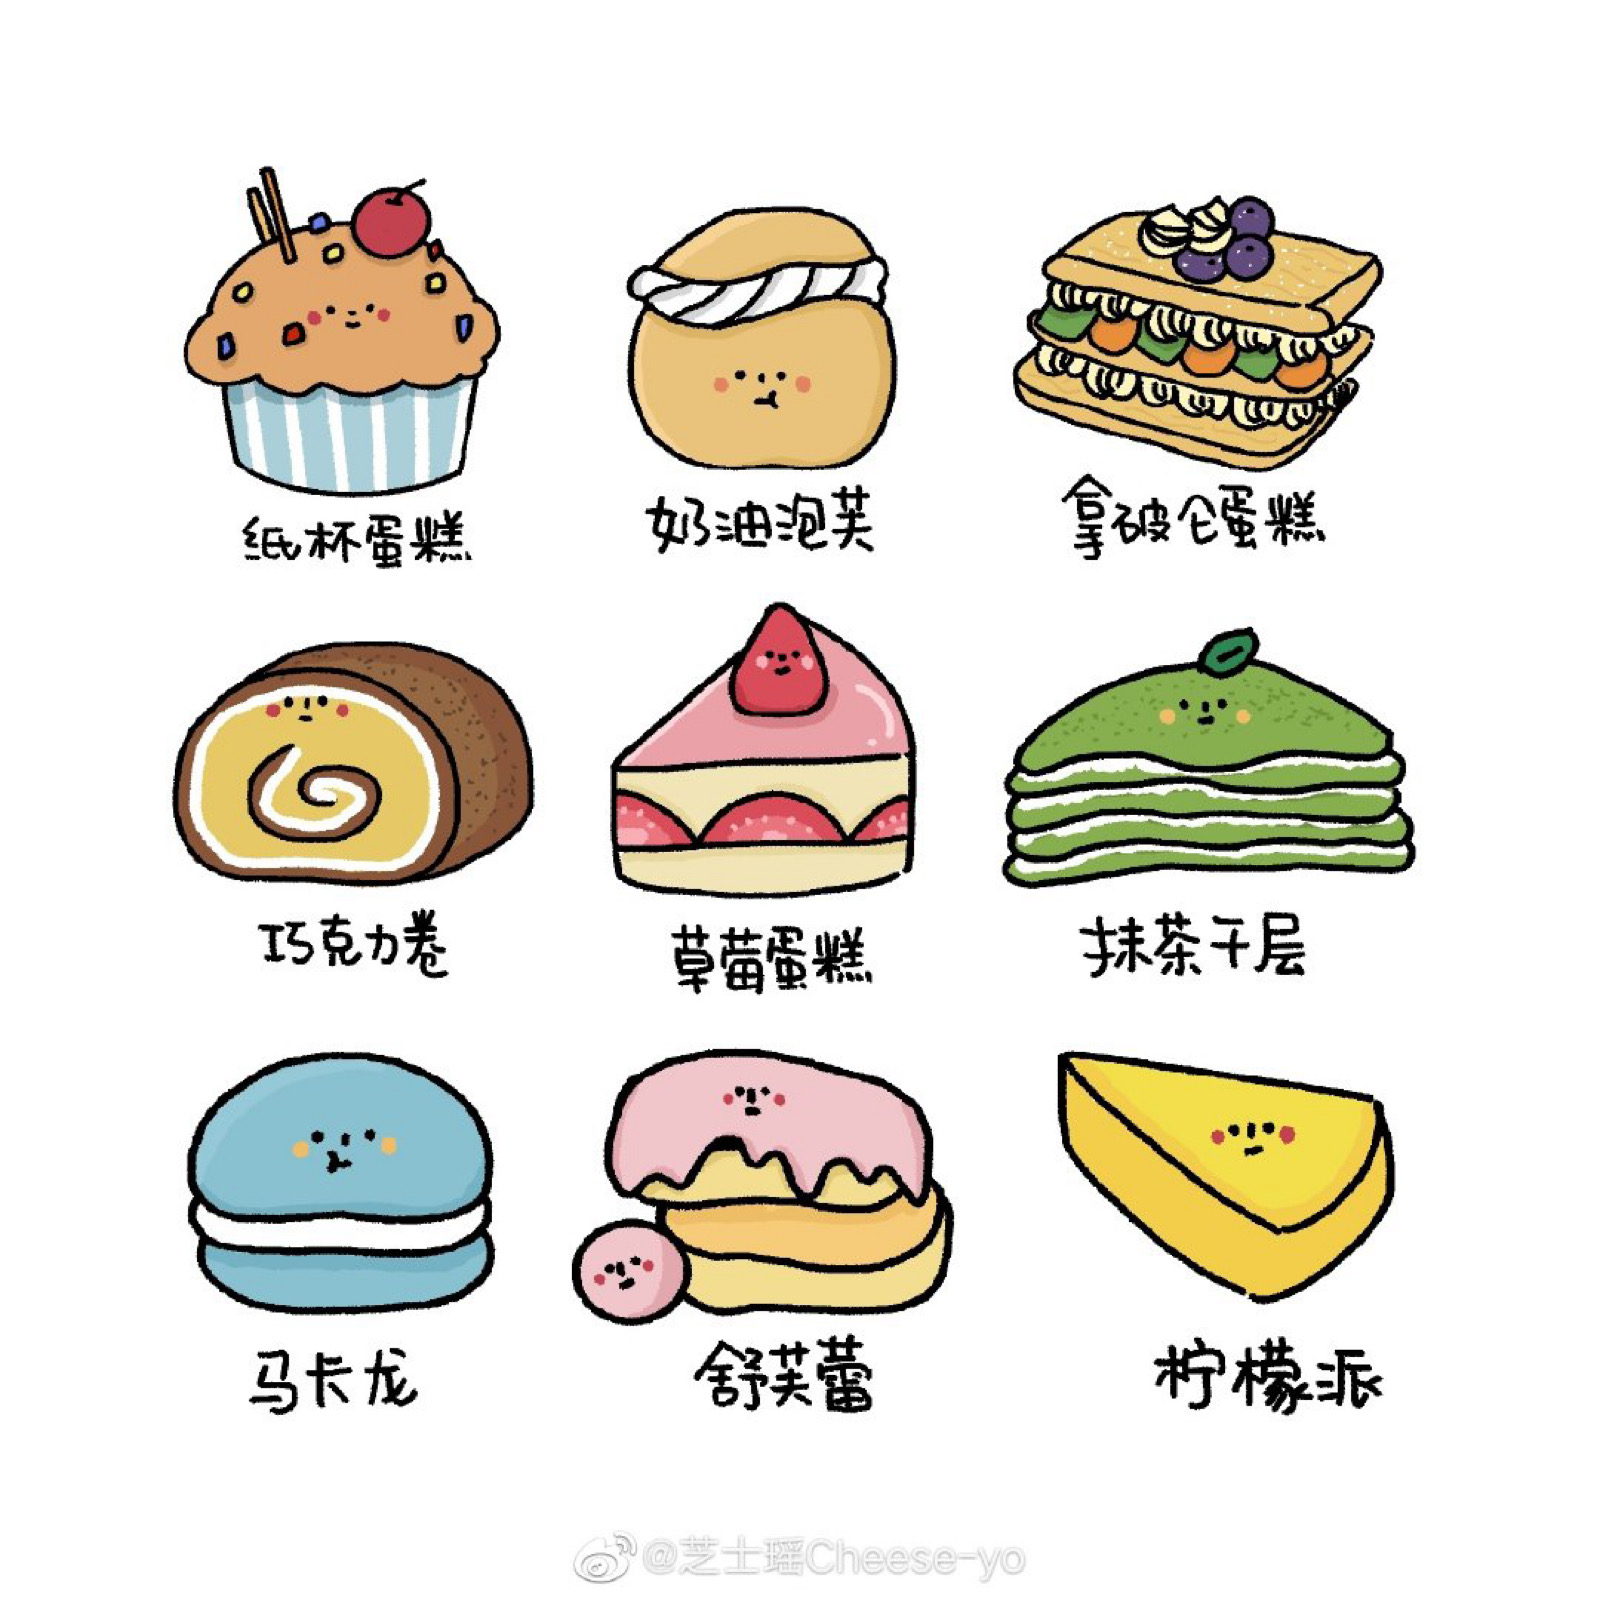 中国美食食物手绘插画元素 - 模板 - Canva可画